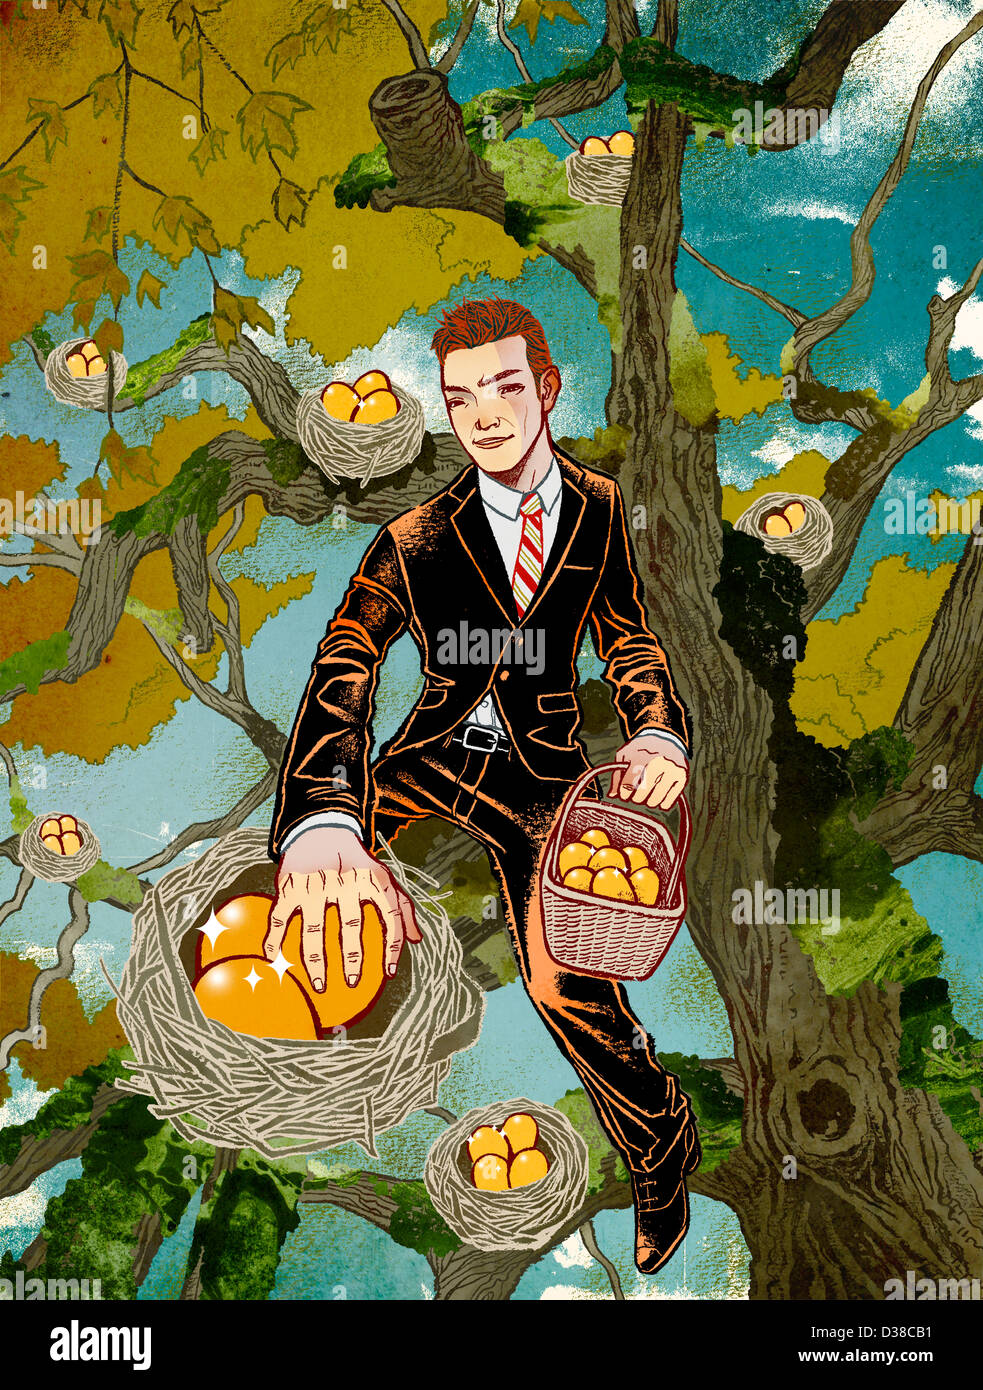 Illustrative Menschenbild sammeln Früchte vom Baum, Gewinn aus Gewerbebetrieb darstellt Stockfoto